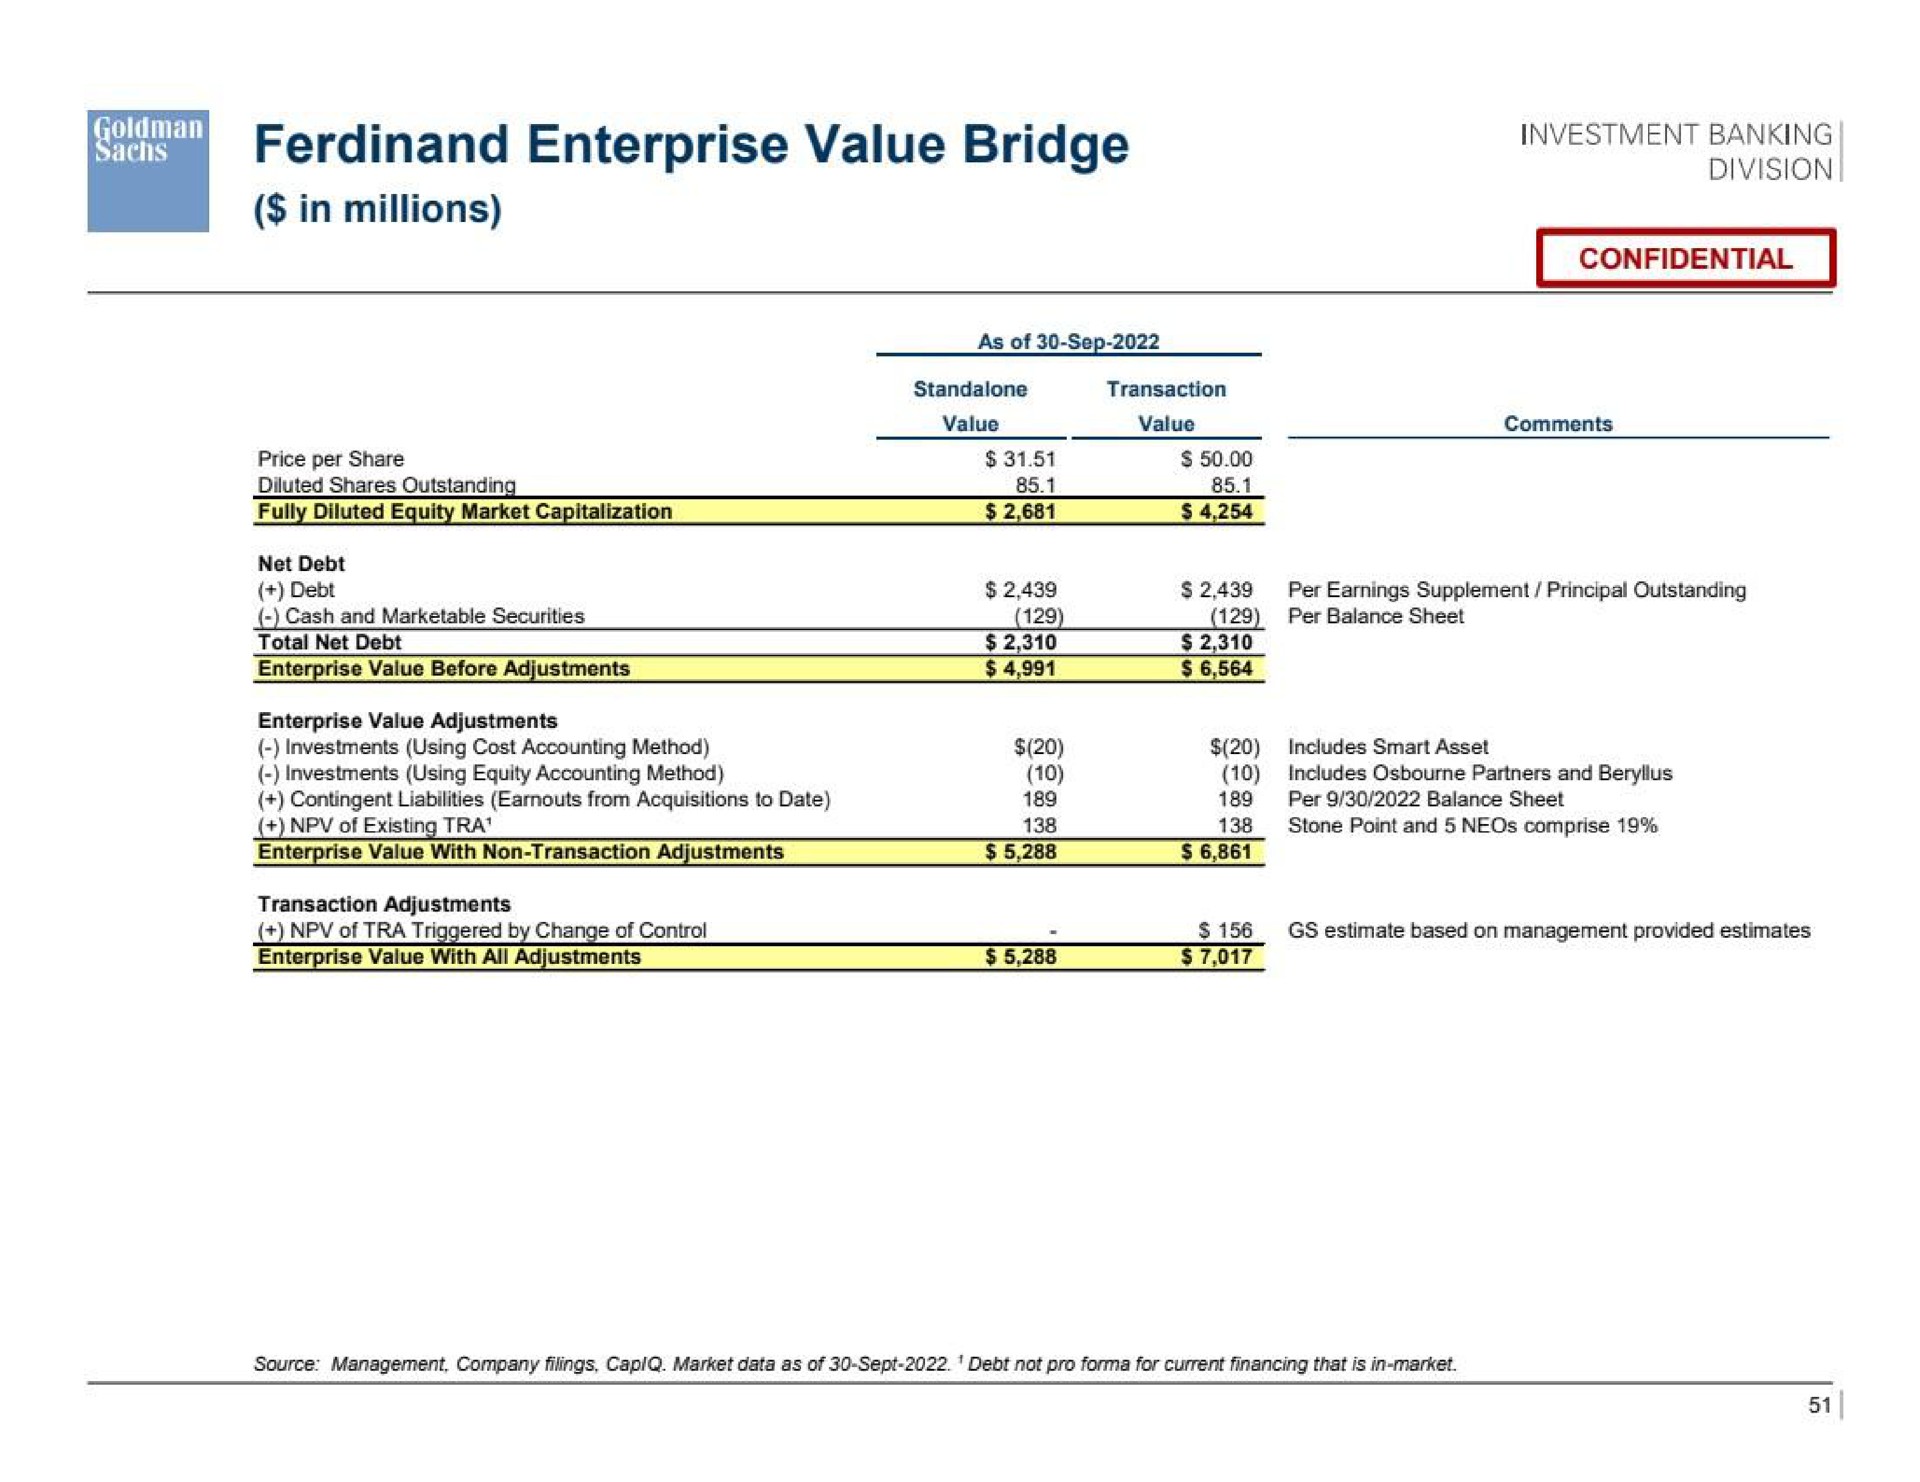 enterprise value bridge | Goldman Sachs